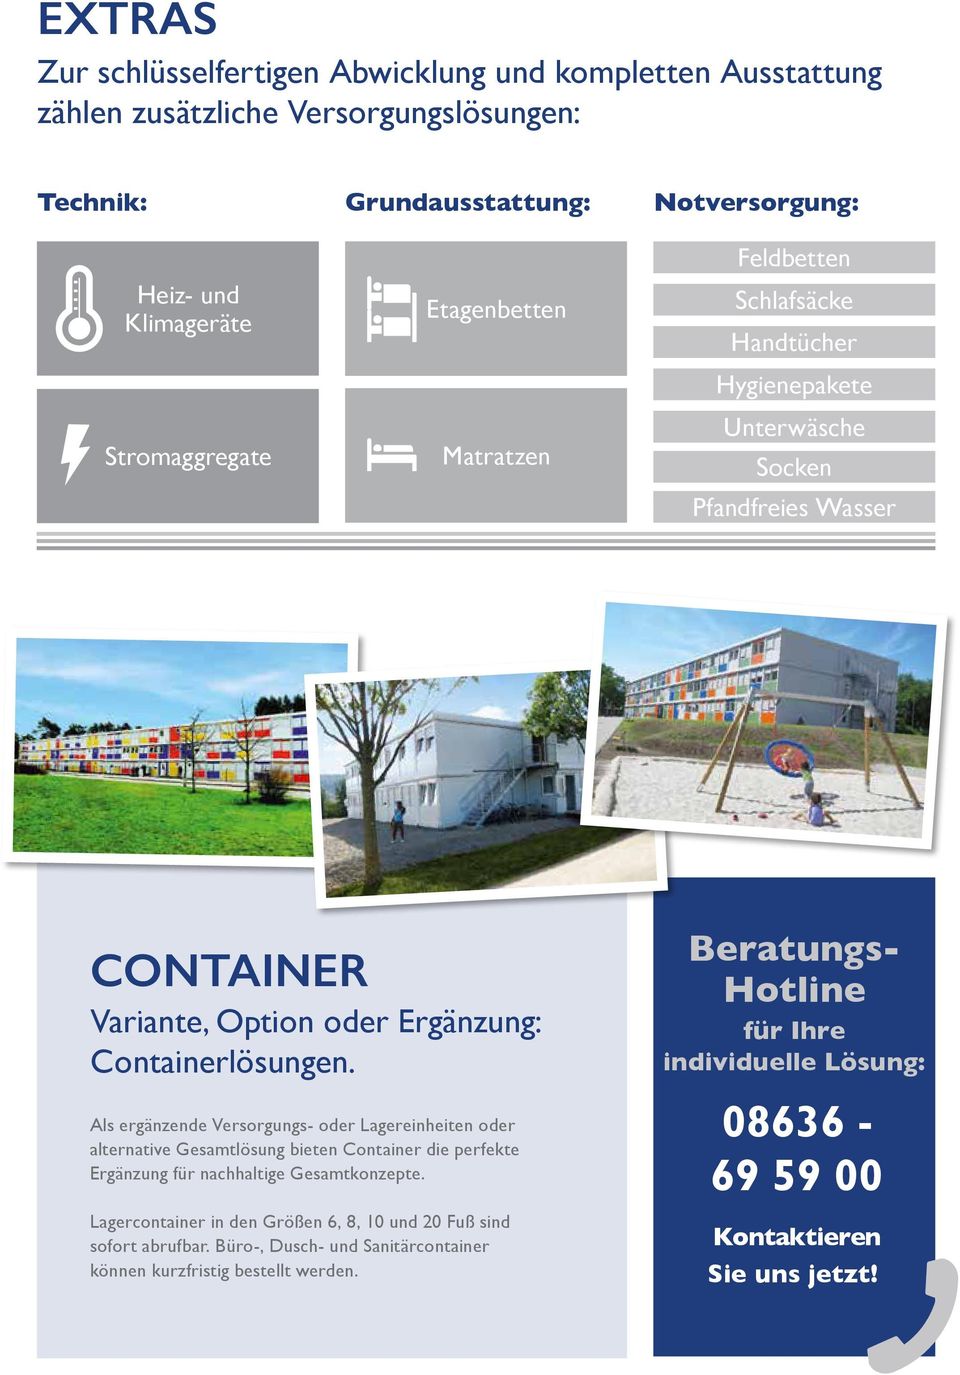 Als ergänzende Versorgungs- oder Lagereinheiten oder alternative Gesamtlösung bieten Container die perfekte Ergänzung für nachhaltige Gesamtkonzepte.